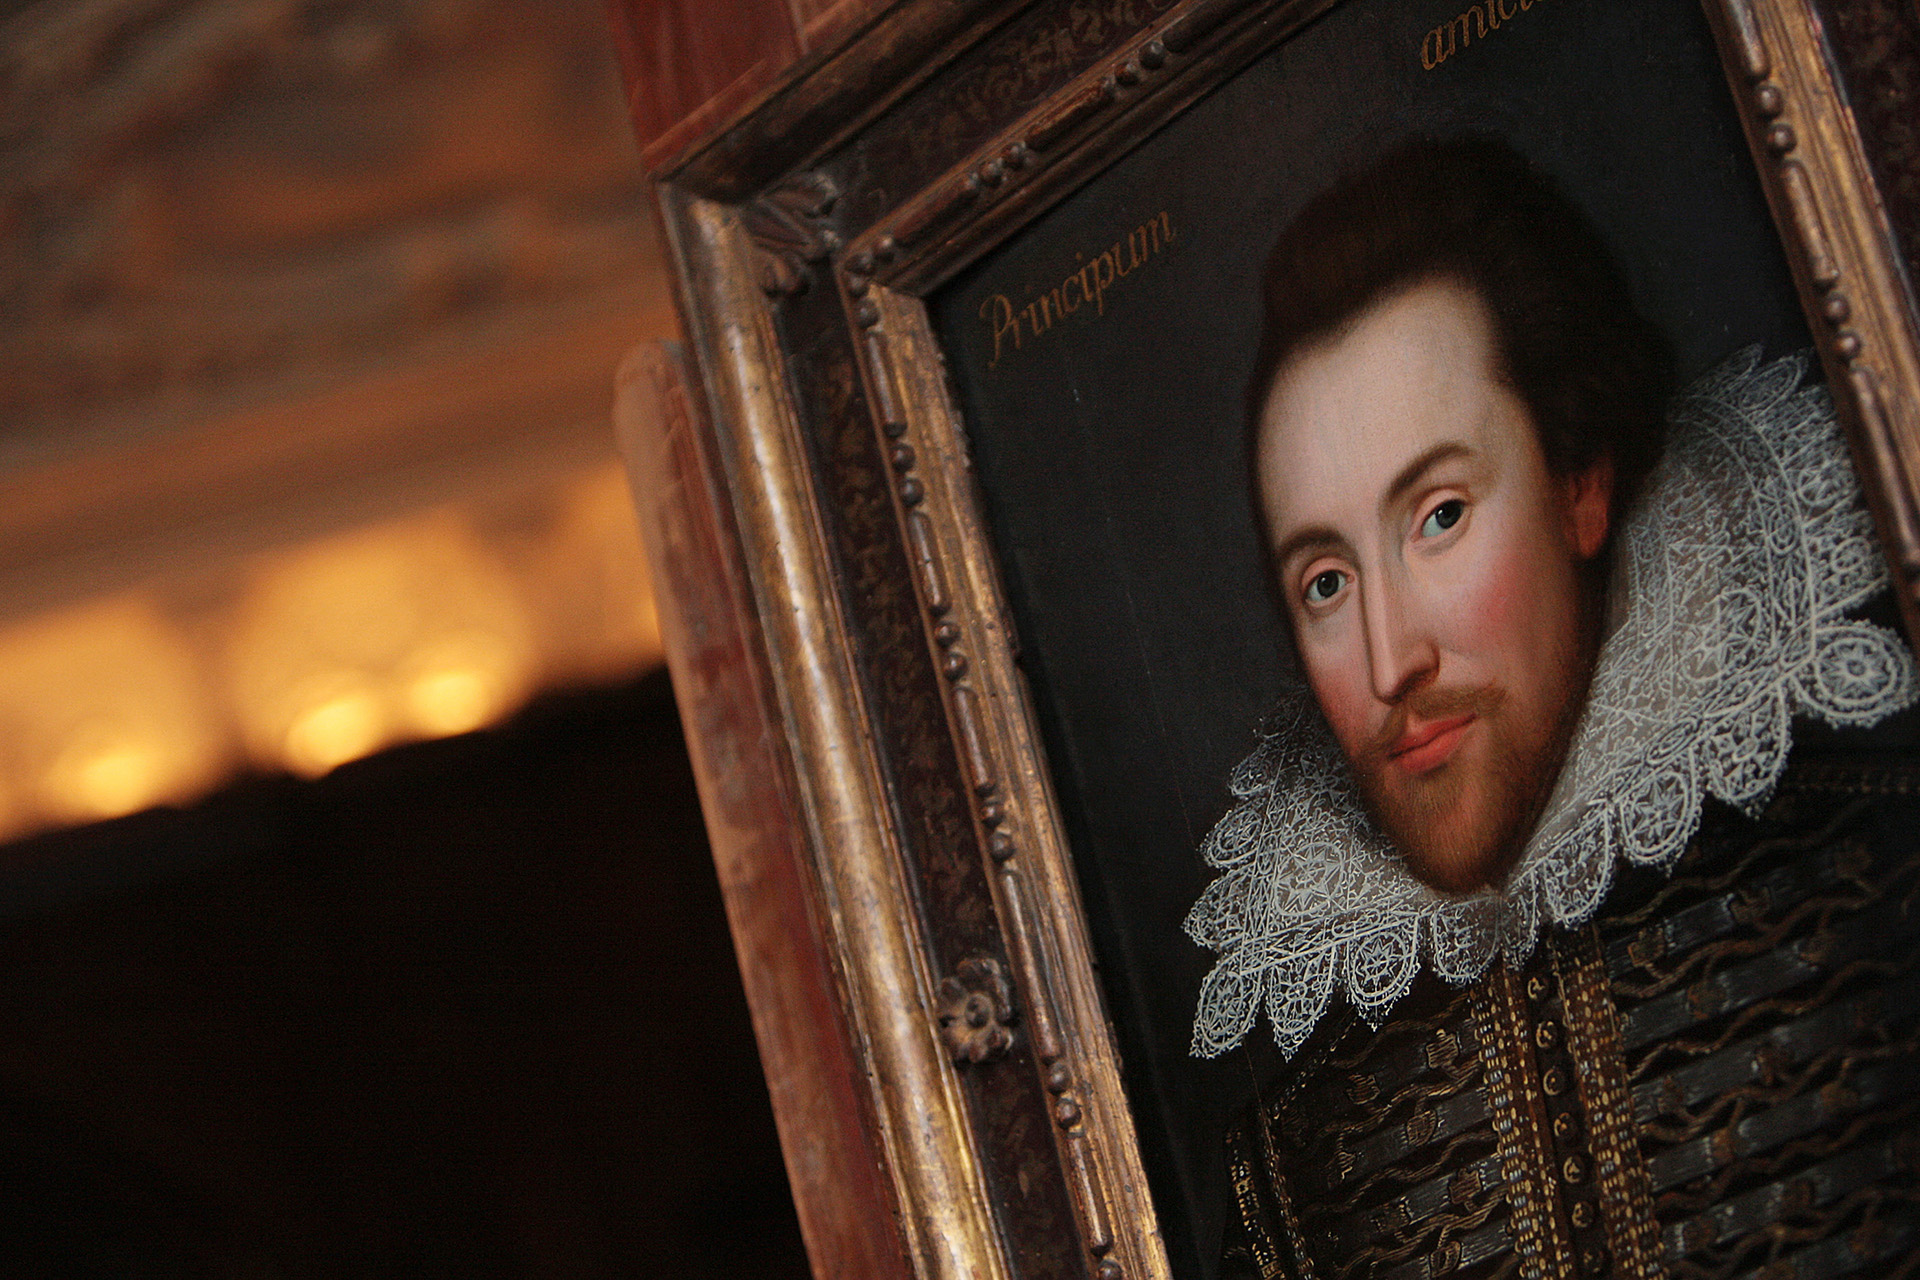 Eladó Shakespeare IV. Henrikjének egy ritka kiadása, az értéke úgy 16-32 millió forint